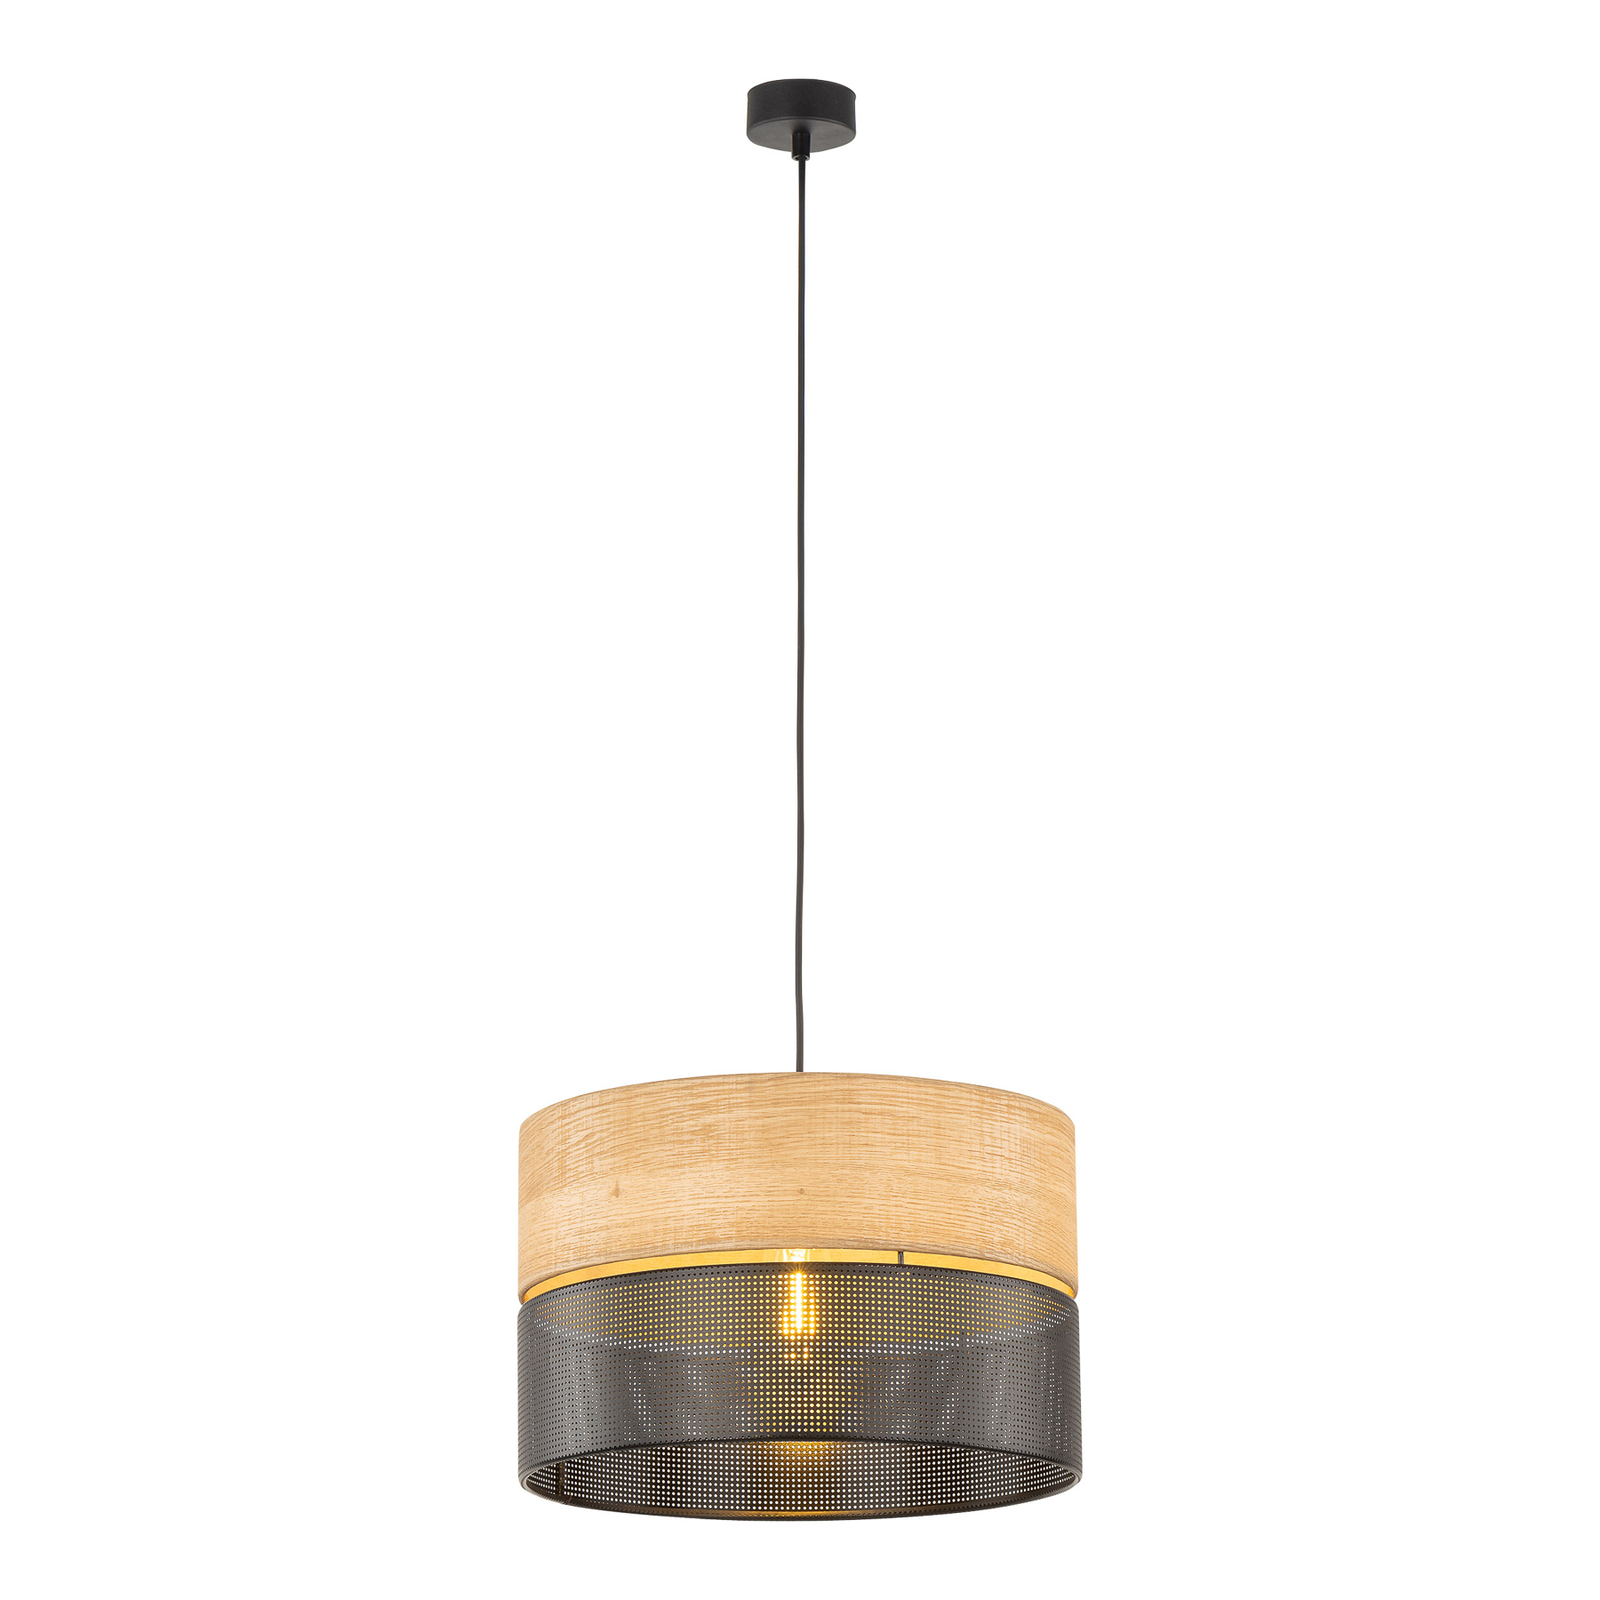 Viseća lampa Nicol, izgled crna/drvo, Ø 38 cm, 1 žarulja. 1 x E27